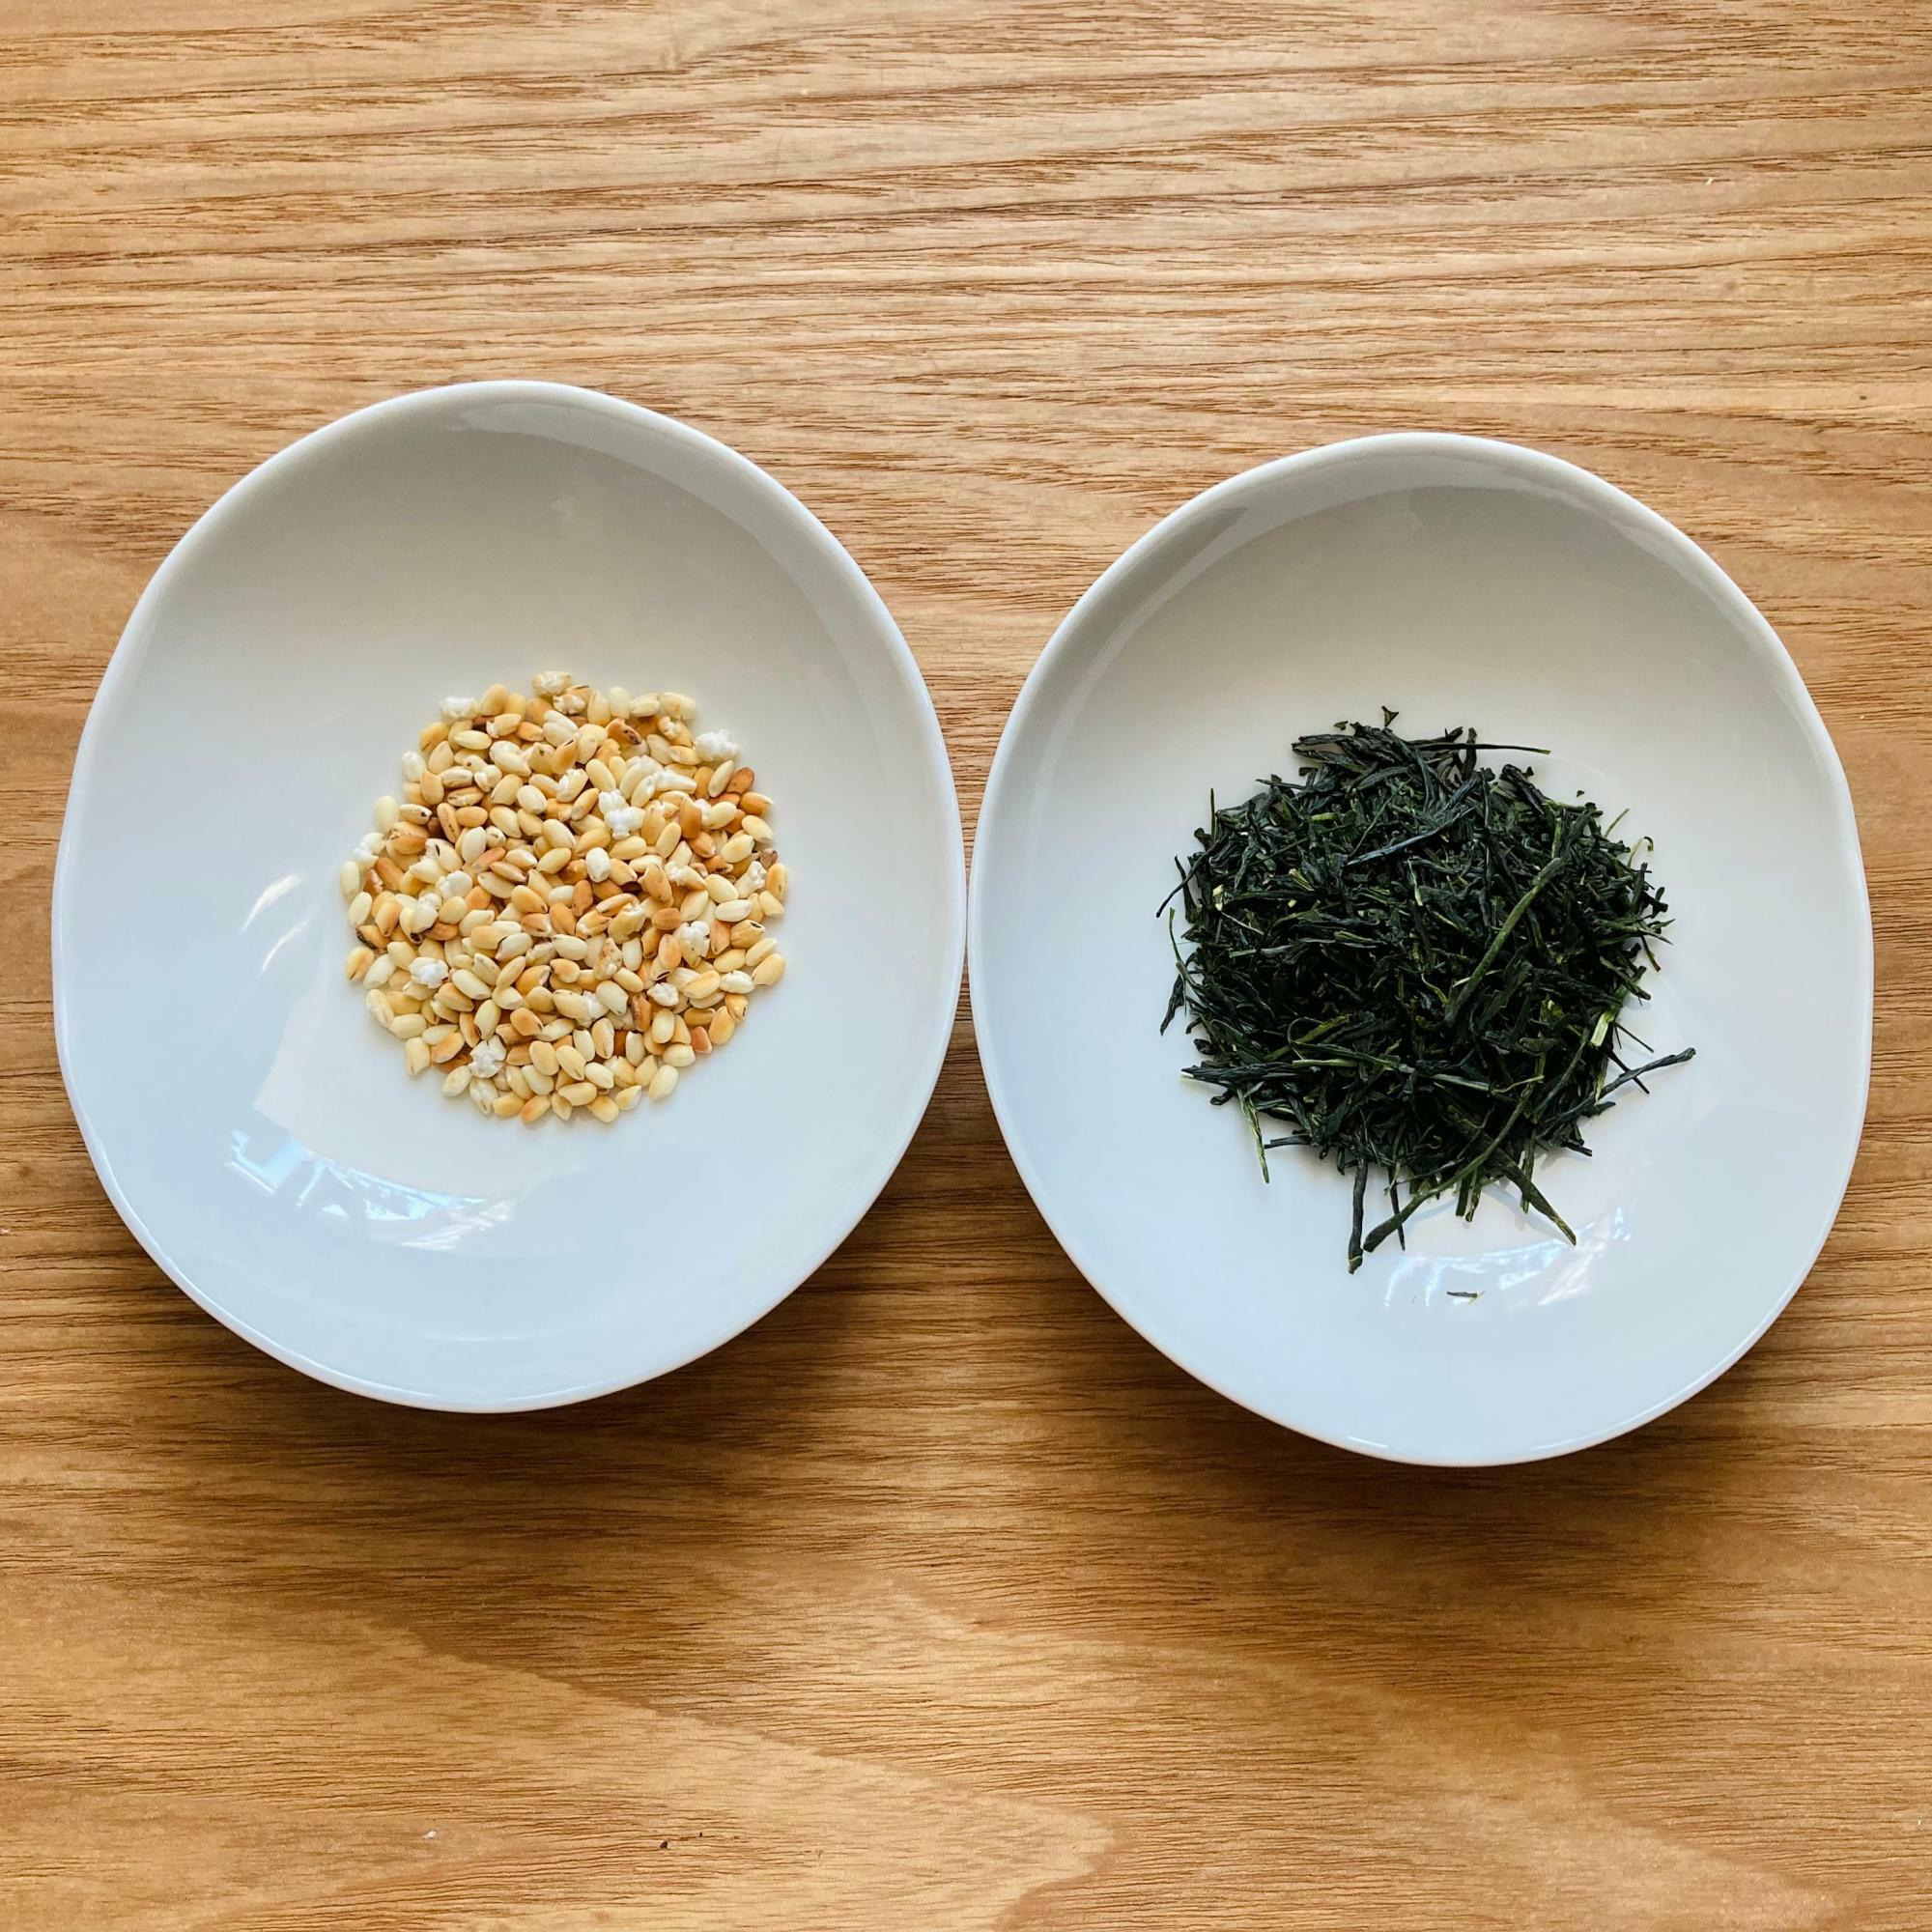 炒り米が１，煎茶の茶葉が２（茶葉は約4グラム）。これで2人分の玄米茶になります。